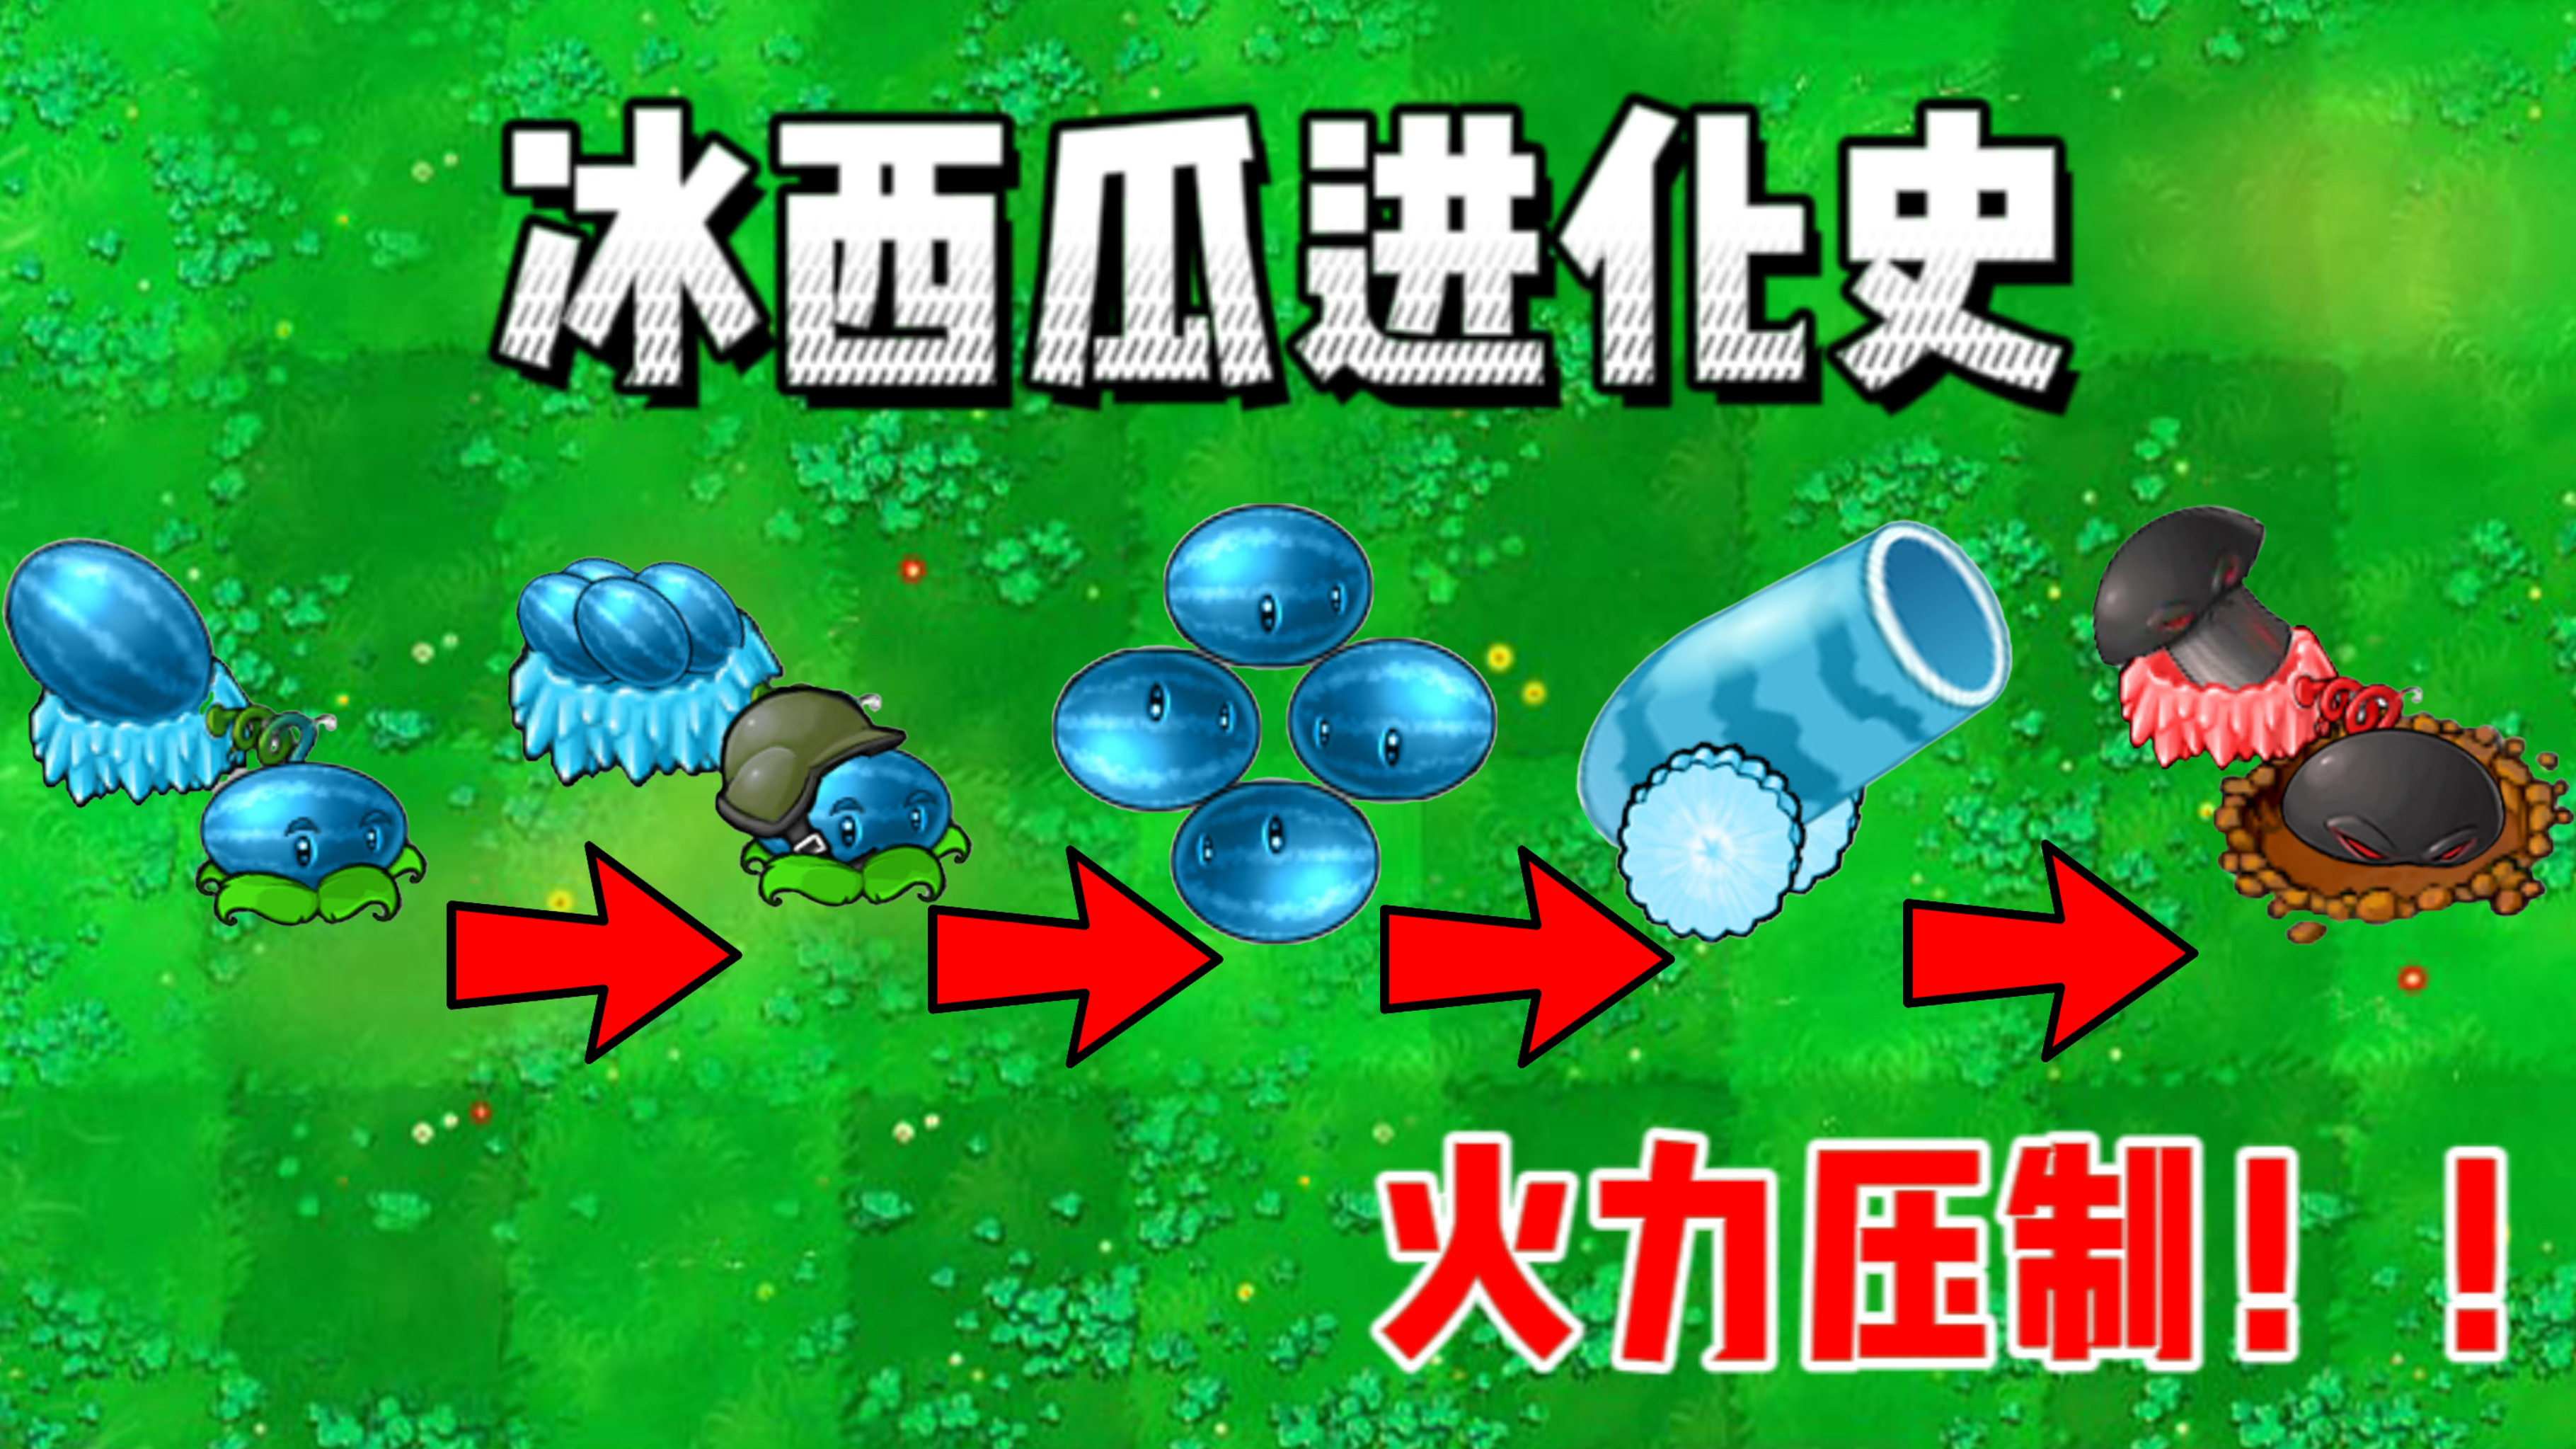 【植物大战僵尸】:冰西瓜进化史!最后一个火力压制僵王博士!